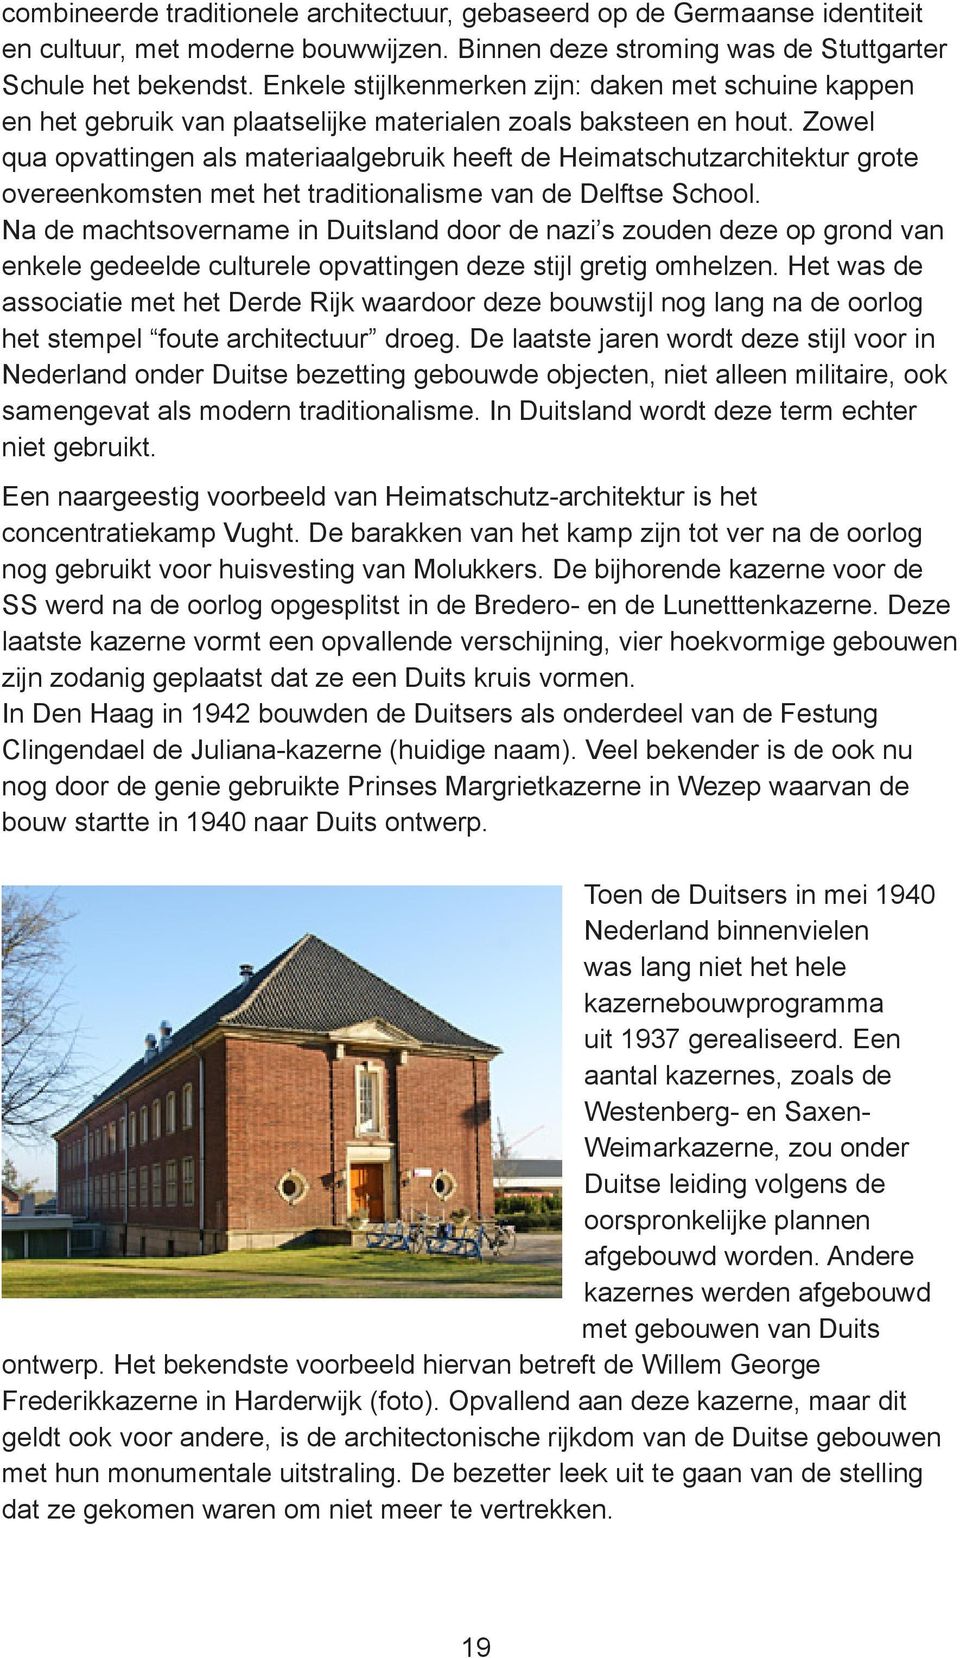 Zowel qua opvattingen als materiaalgebruik heeft de Heimatschutzarchitektur grote overeenkomsten met het traditionalisme van de Delftse School.